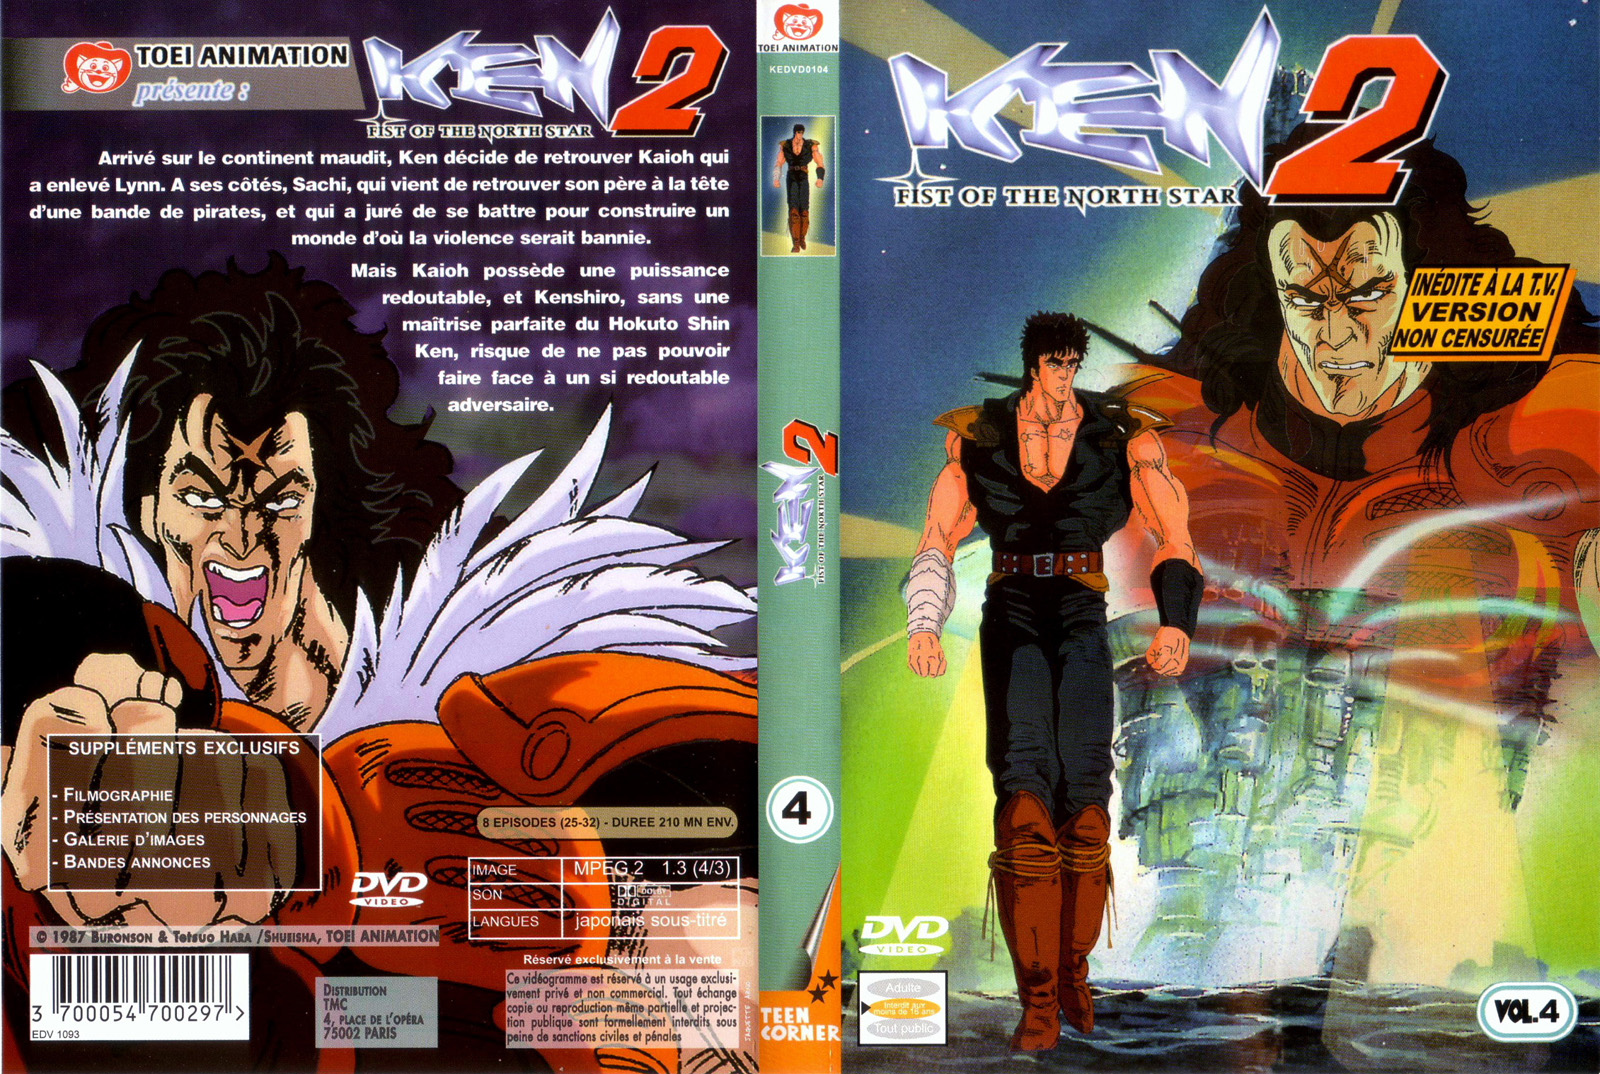 Jaquette DVD Ken 2 vol 4